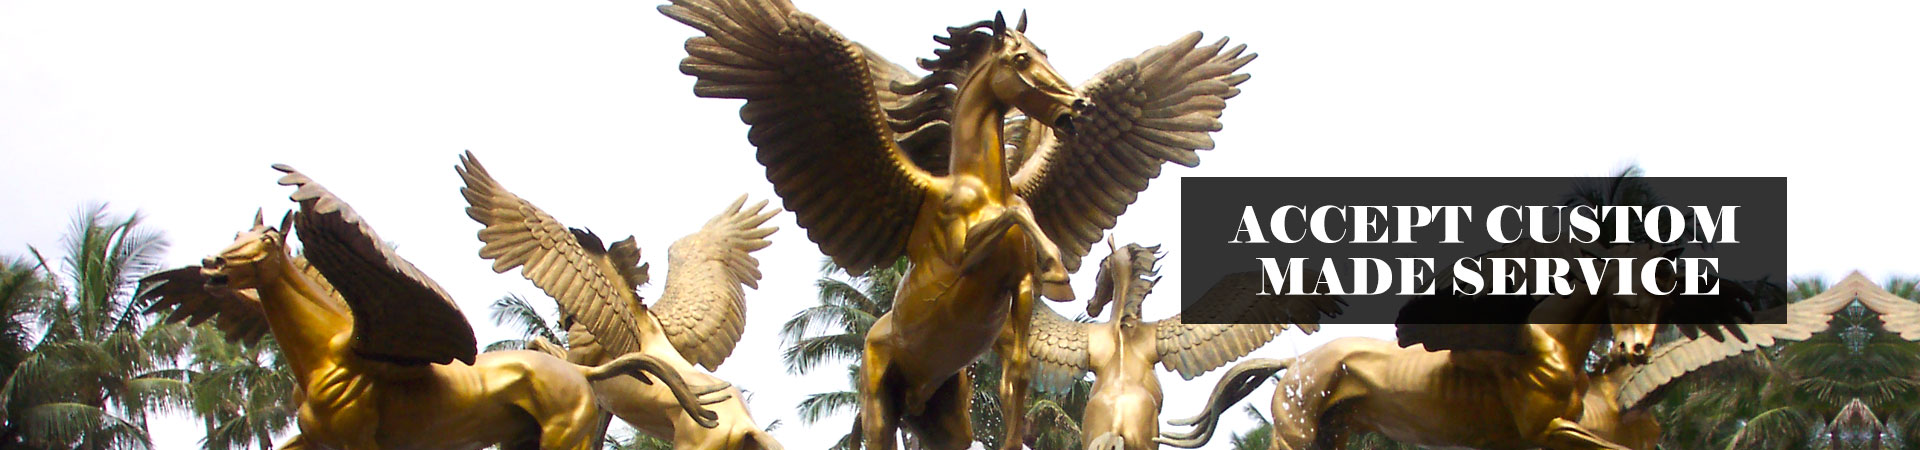 
bronze horse ornaments